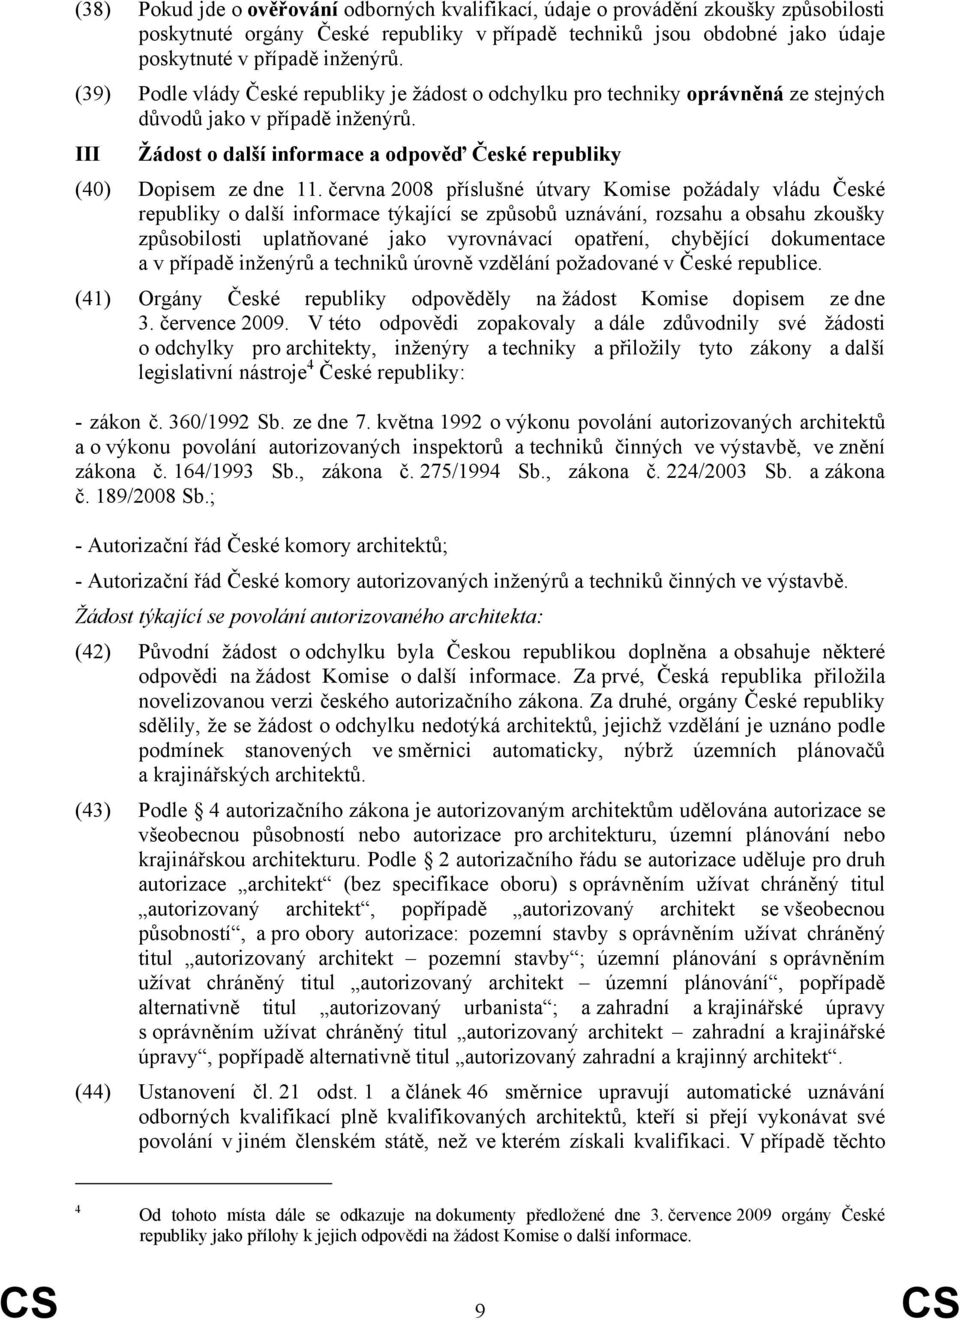 června 2008 příslušné útvary Komise požádaly vládu České republiky o další informace týkající se způsobů uznávání, rozsahu a obsahu zkoušky způsobilosti uplatňované jako vyrovnávací opatření,